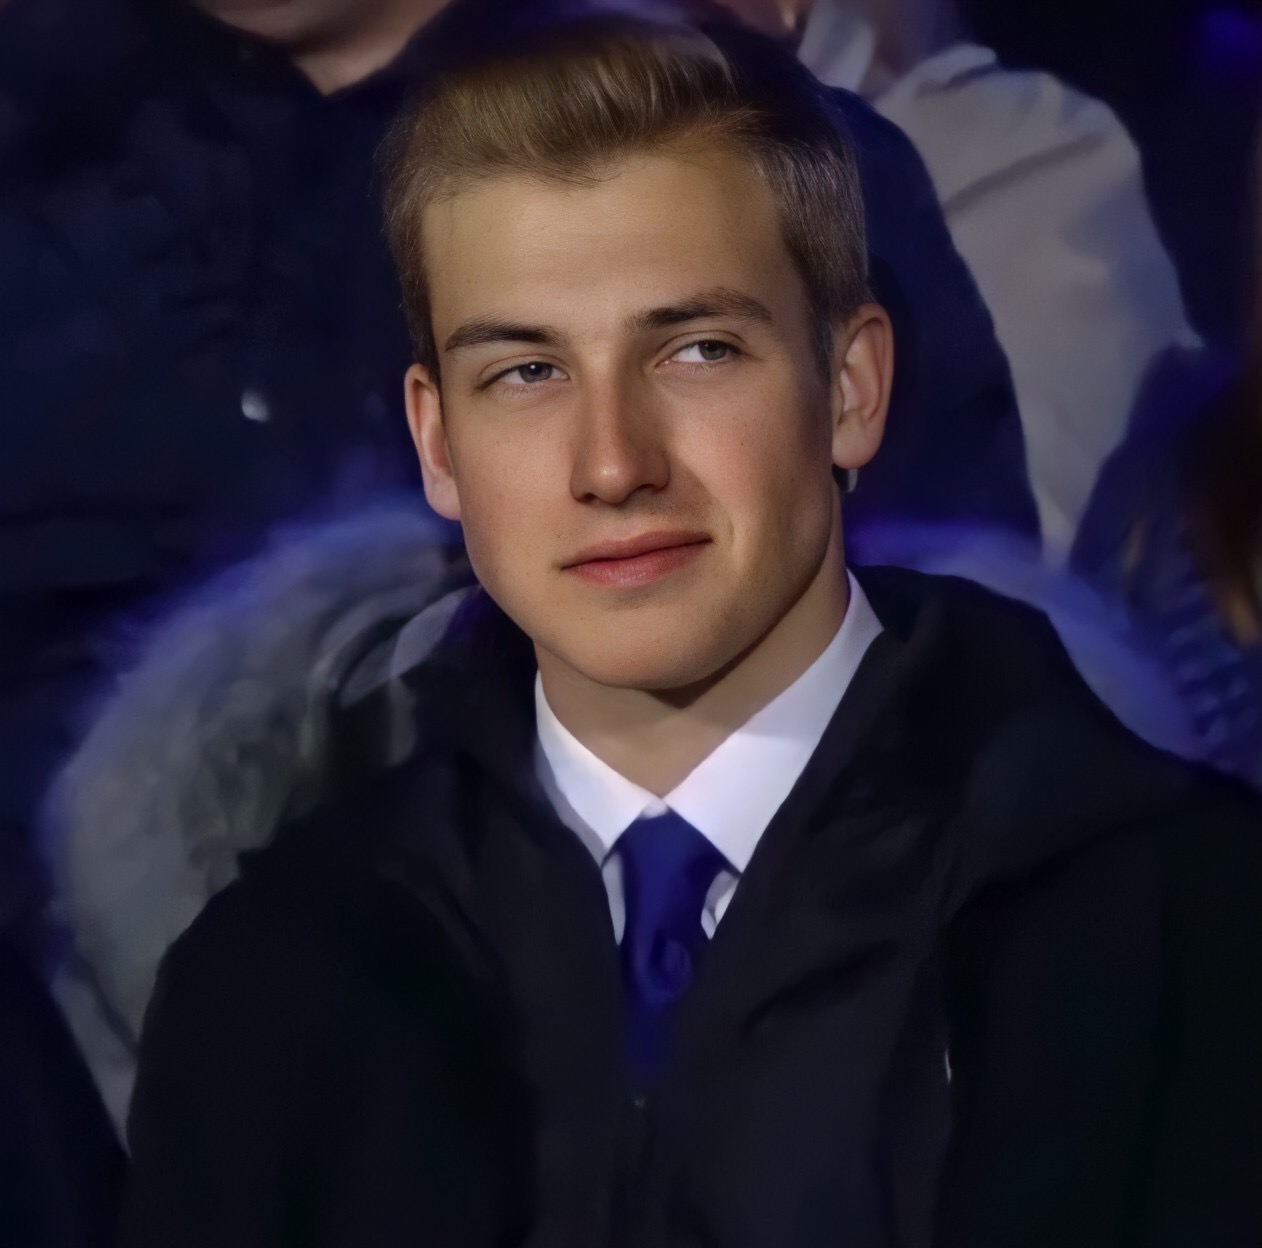 Con trai của Tổng thống Belarus với diện mạo điển trai và cuốn hút của một tài tử Hollywood khiến nhiều cô gái say mê. Hãy xem bức ảnh này để khám phá tình cảm ái tình của con trai Tổng thống nước bạn nhé.